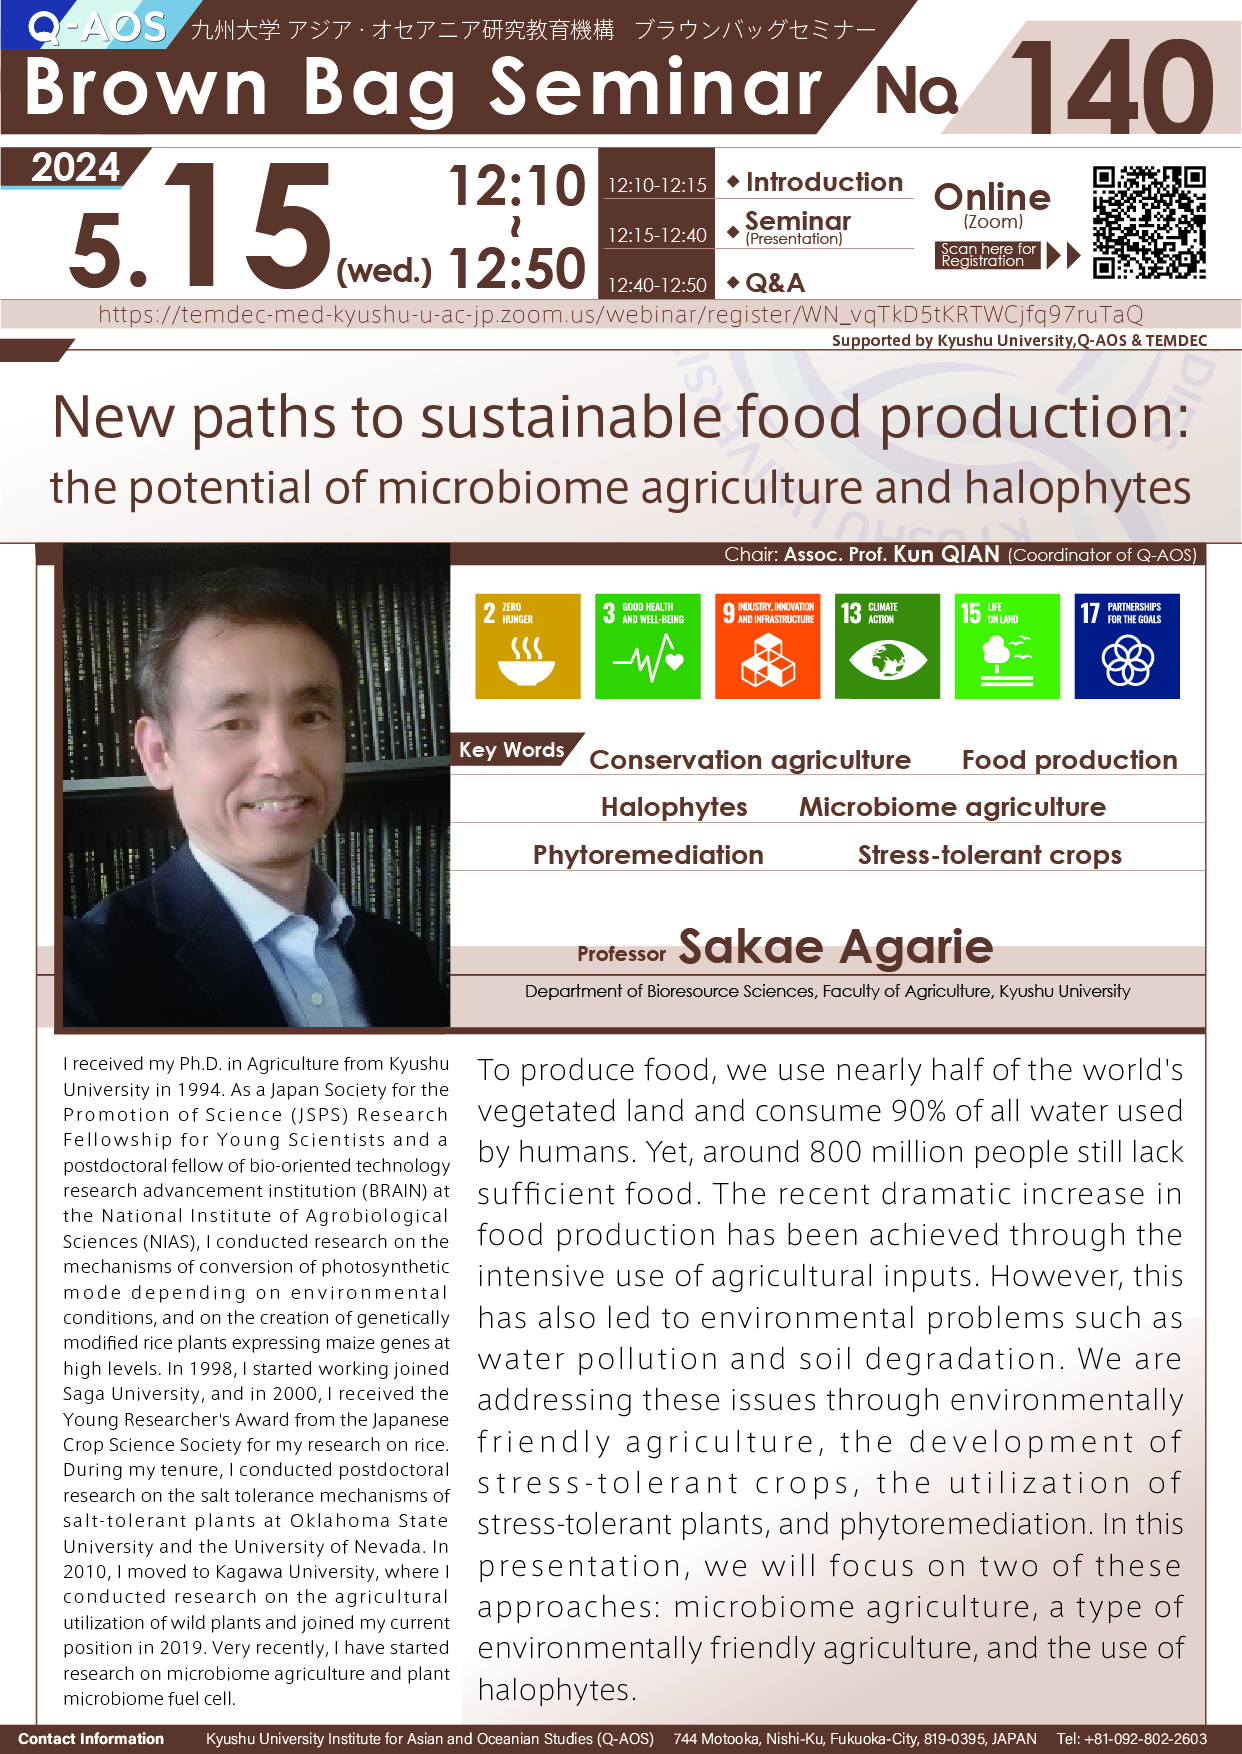 アイキャッチ画像：Q-AOS Brown Bag Seminar Series The 140th Seminar “New paths to sustainable food production: the potential of microbiome agriculture and halophytes”